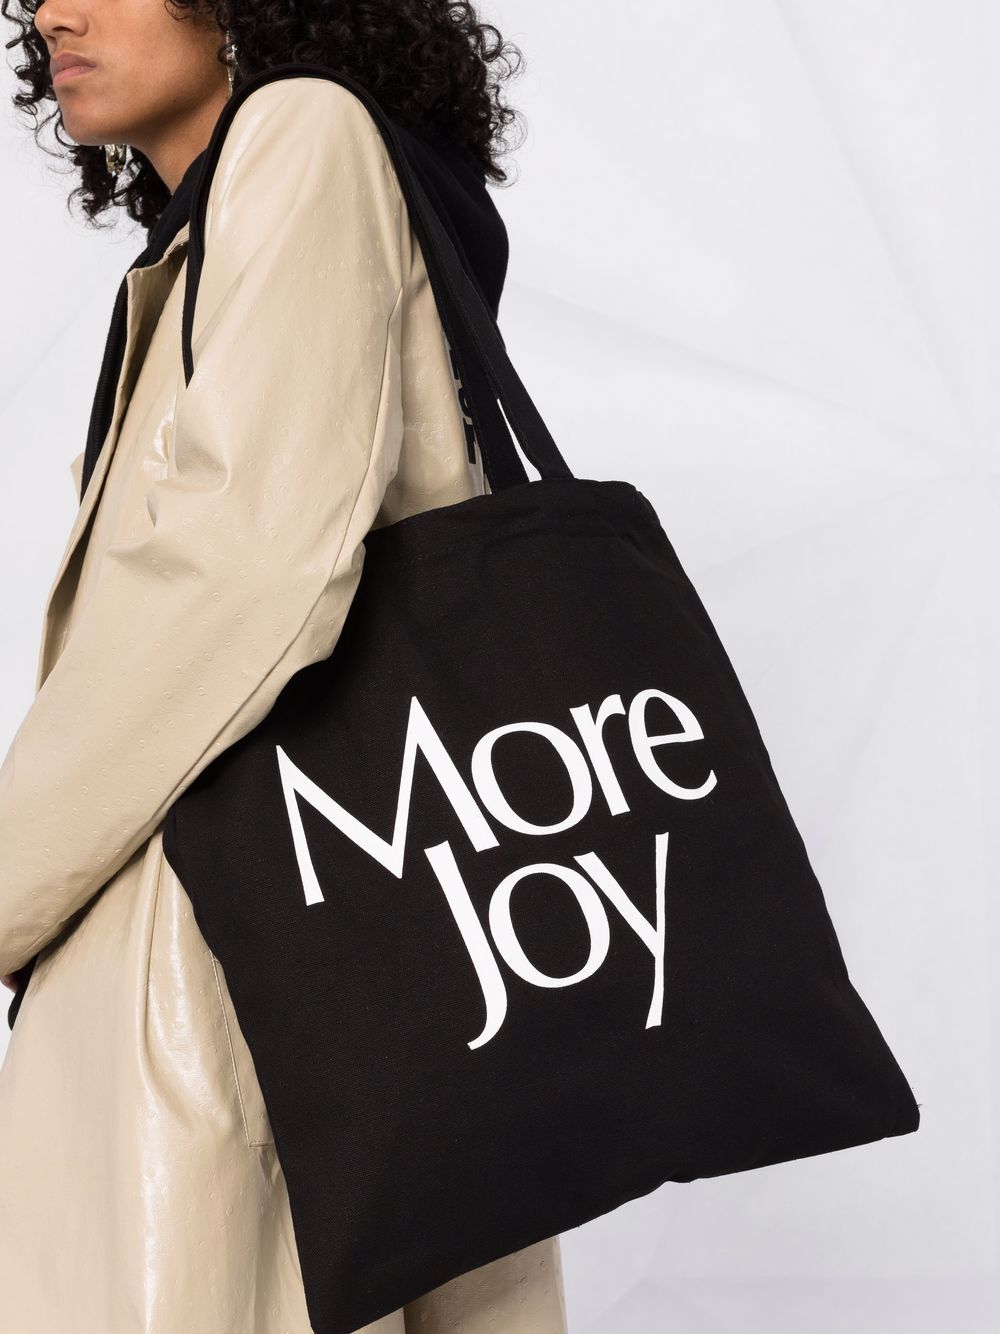 фото More joy сумка-тоут с логотипом